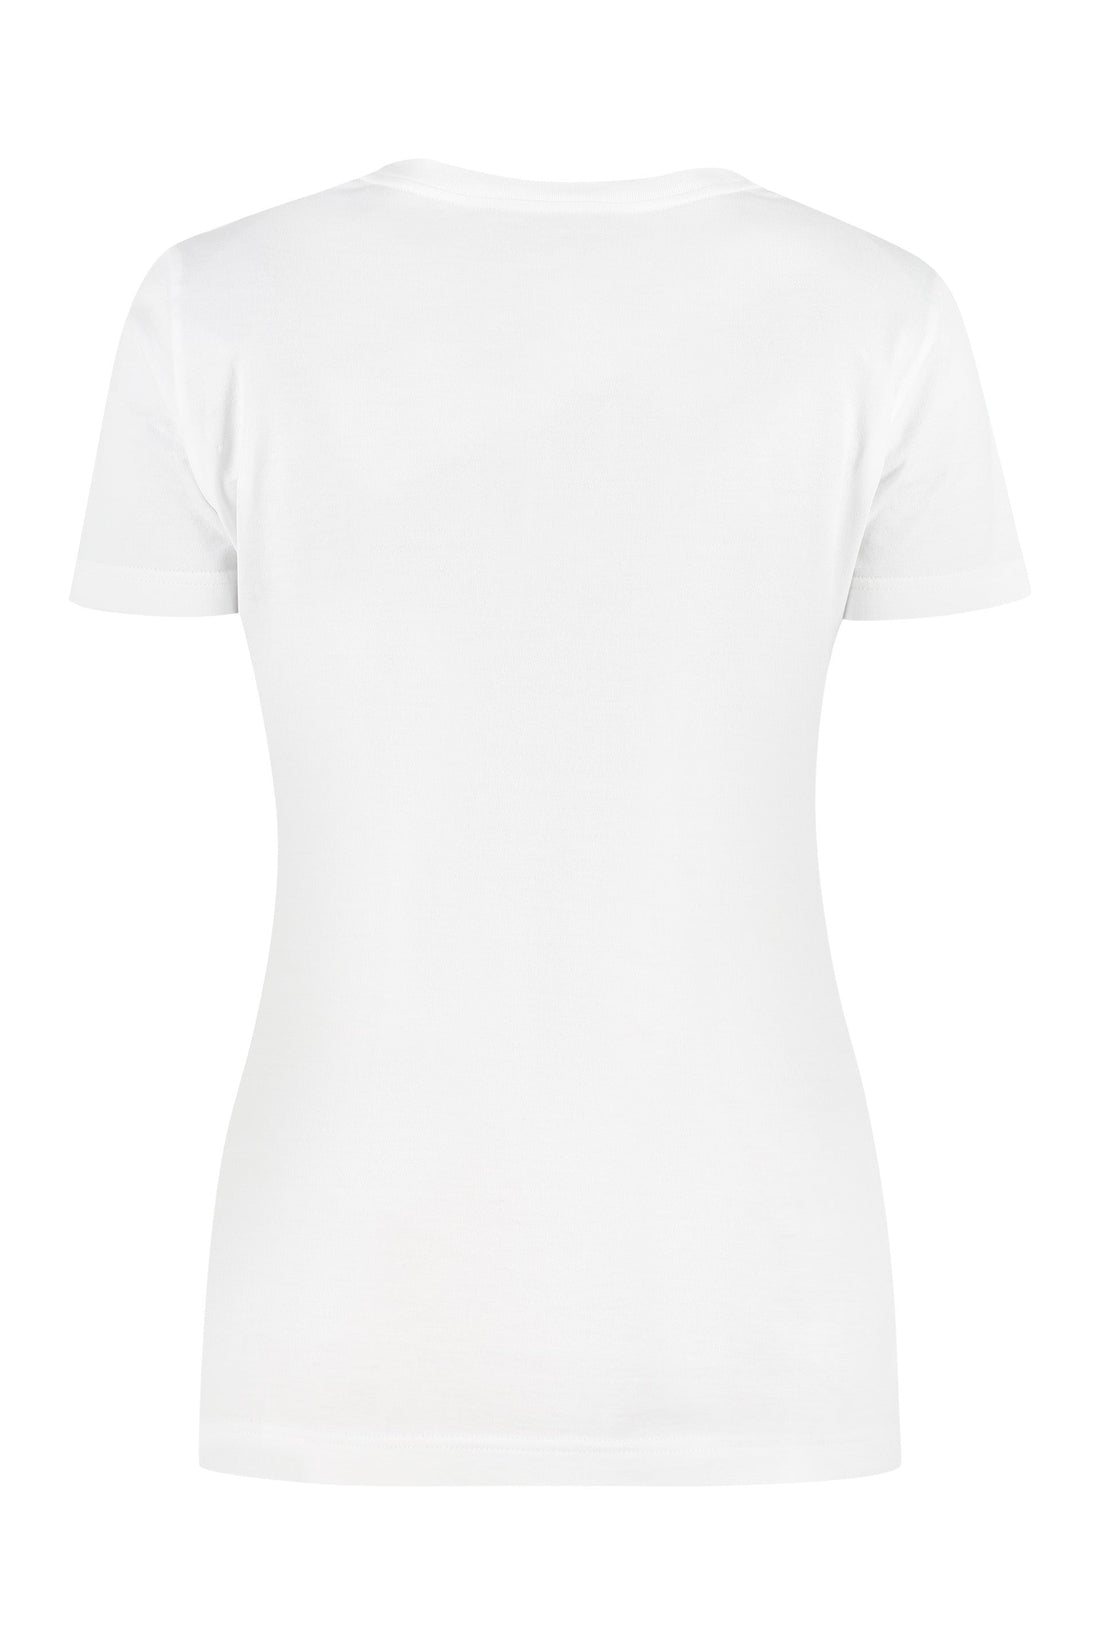 Dolce & Gabbana-OUTLET-SALE-Logo print t-shirt-ARCHIVIST